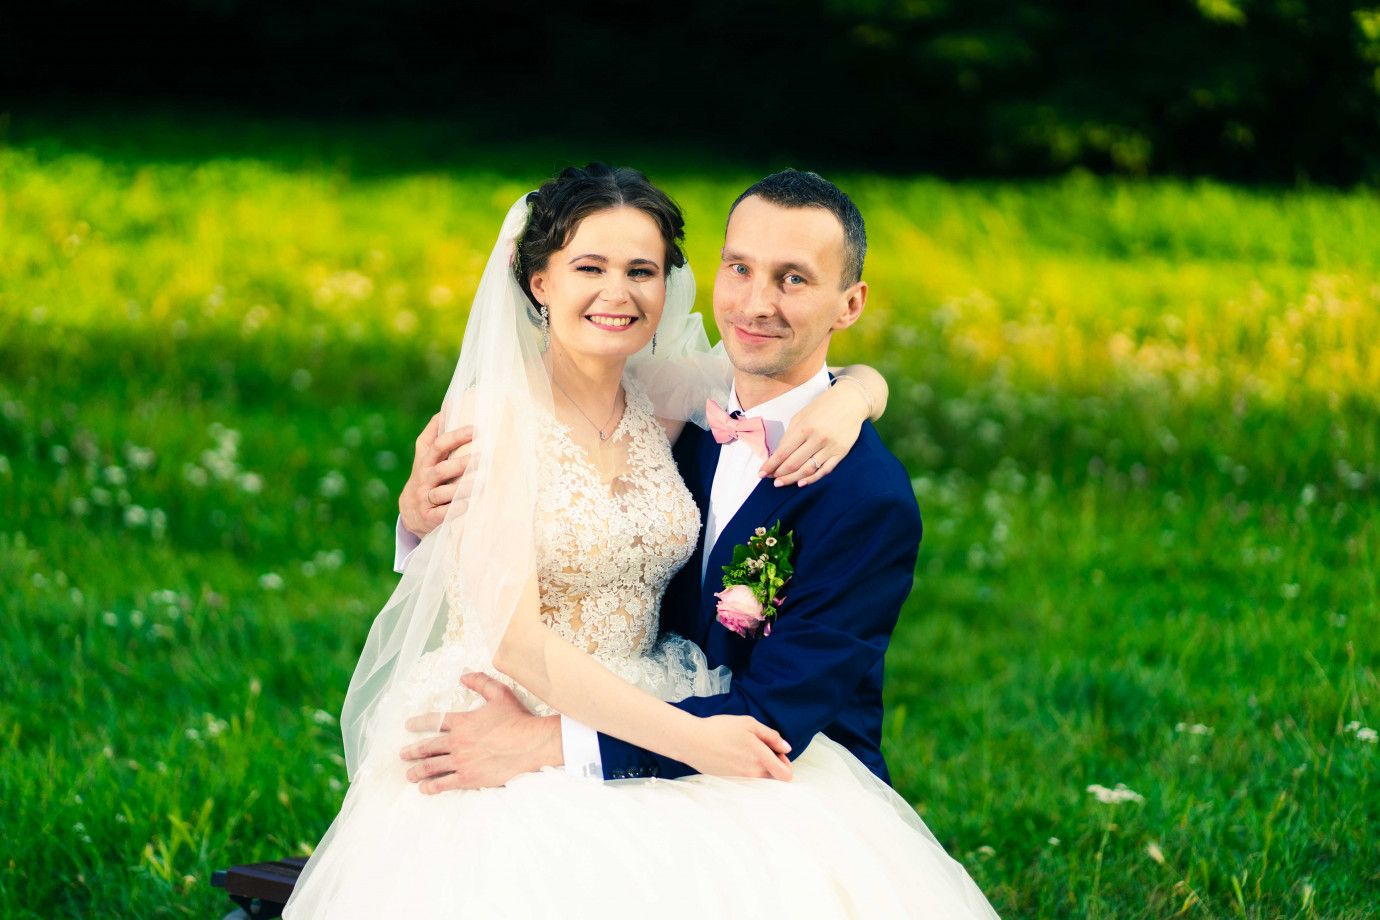 fotograf szczecin piotr-babczynski portfolio zdjecia slubne inspiracje wesele plener slubny sesja slubna